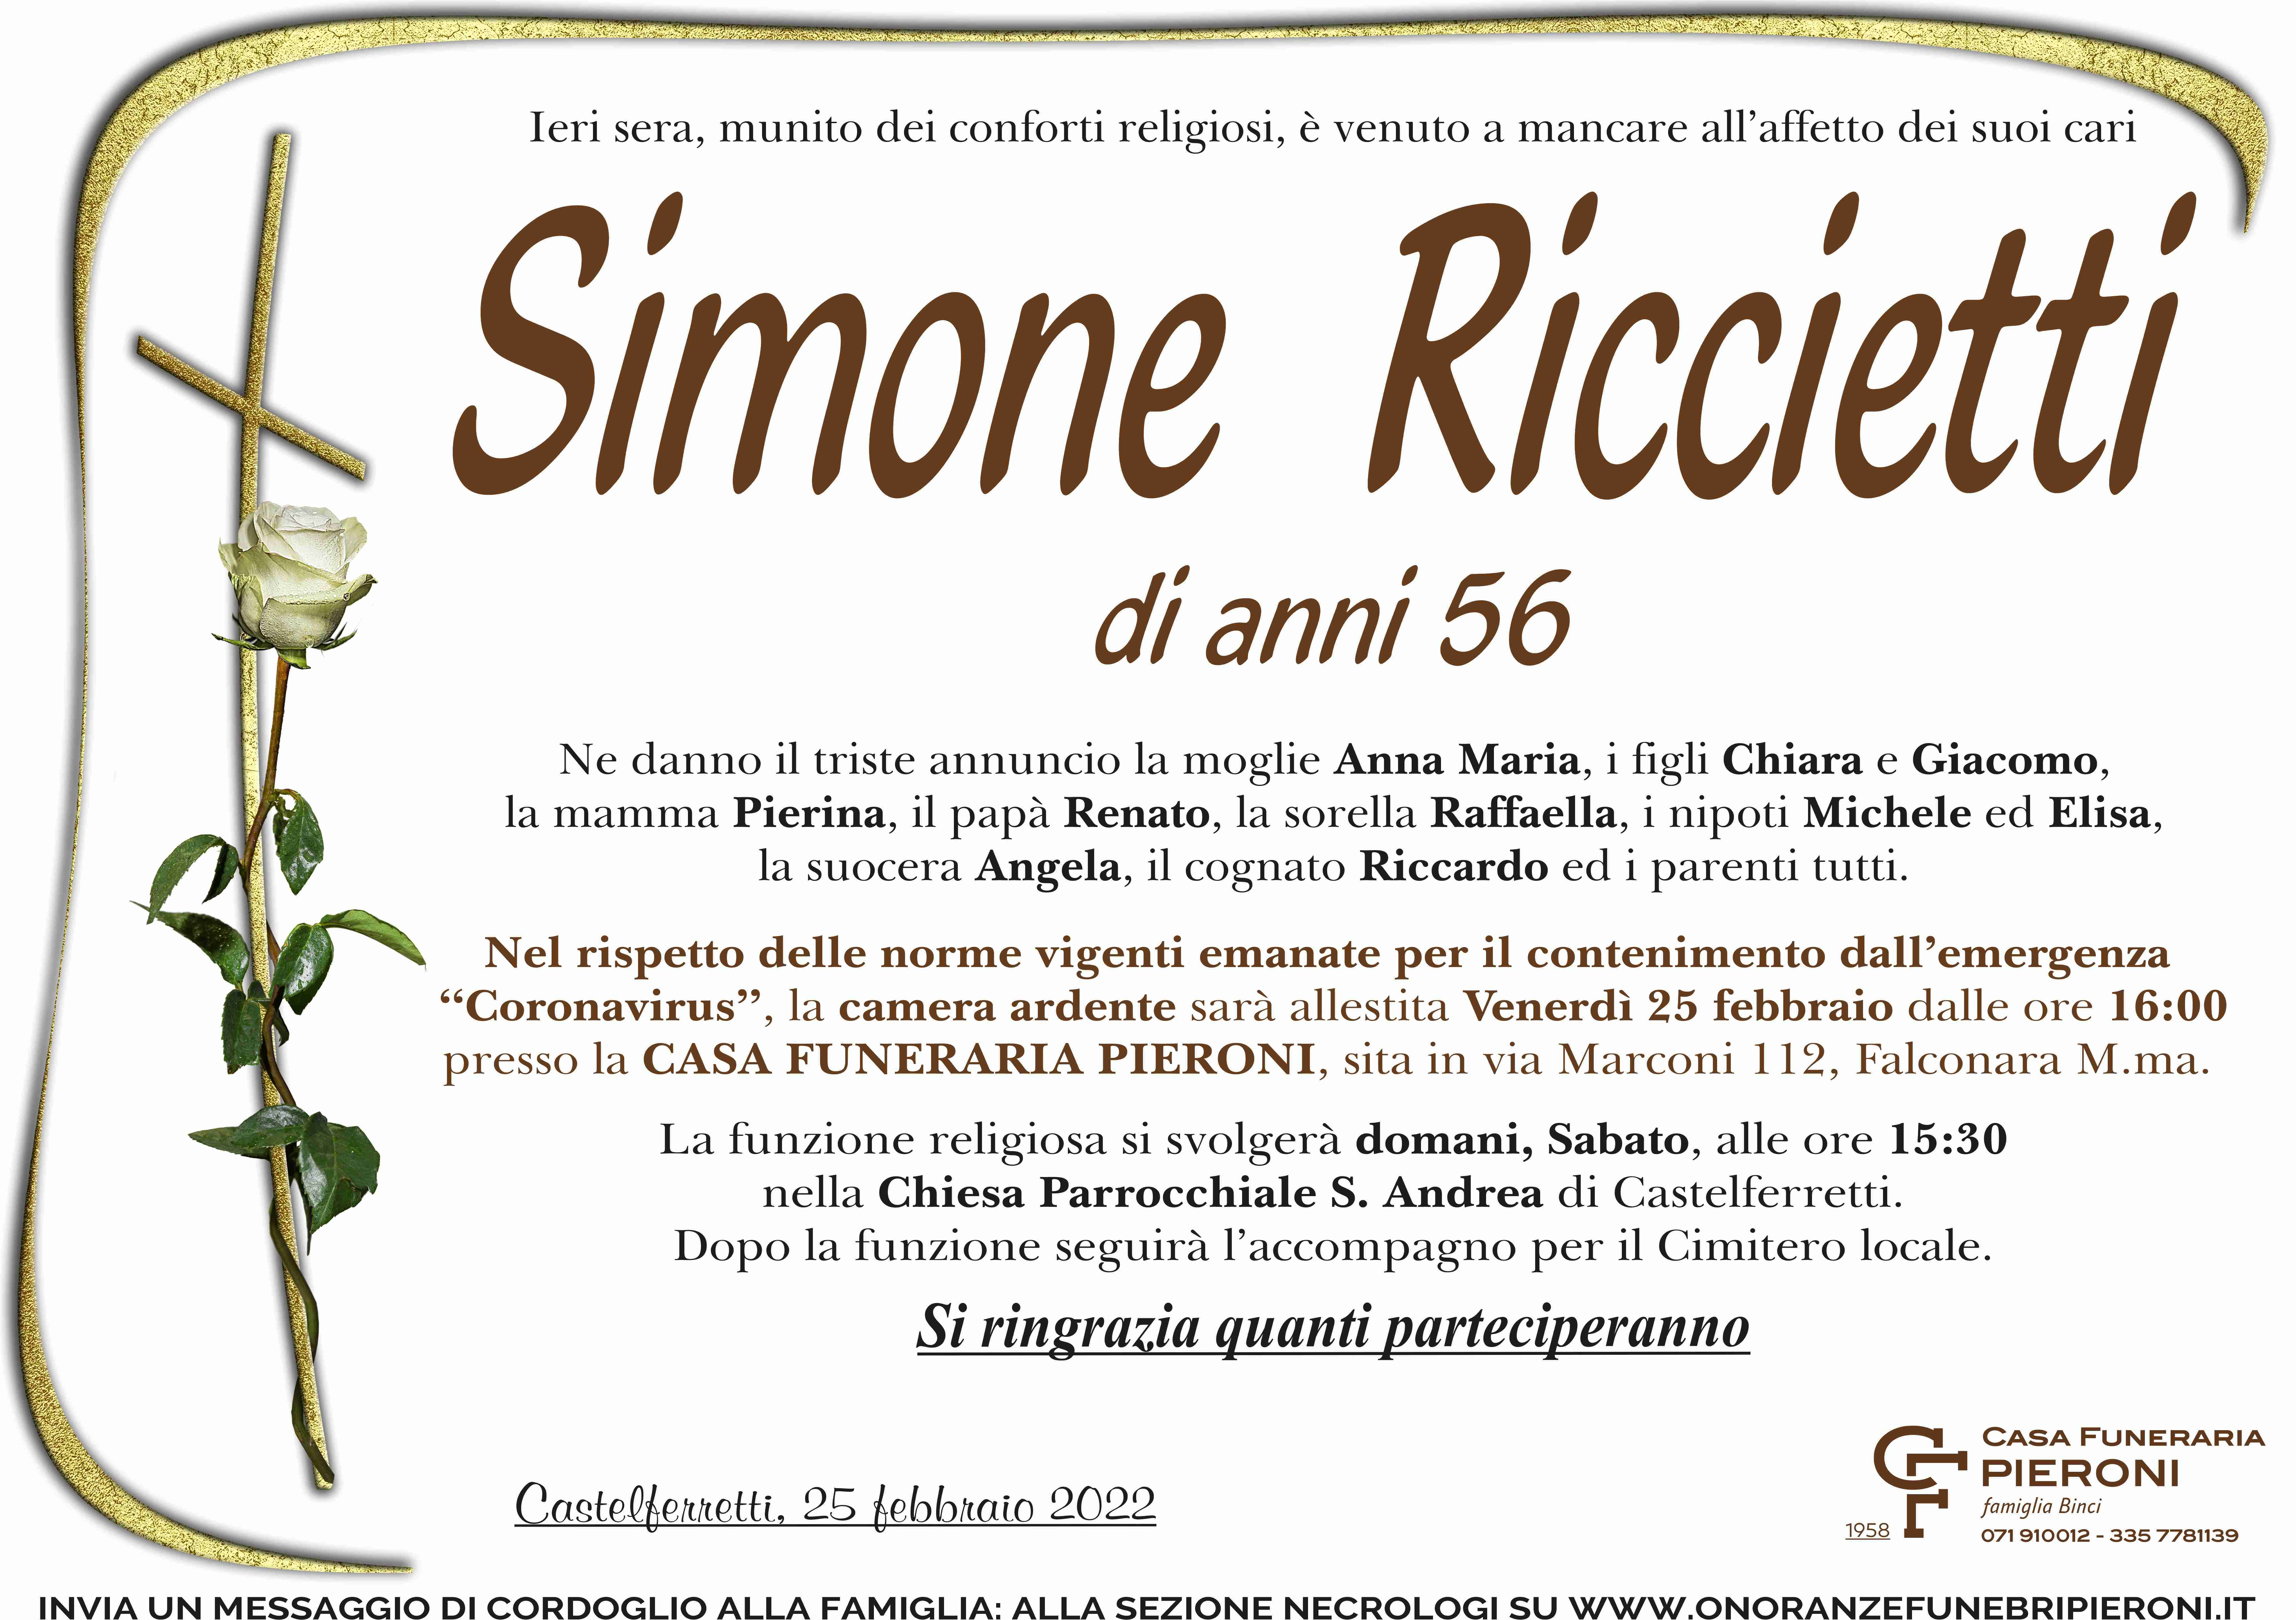 Simone Riccietti